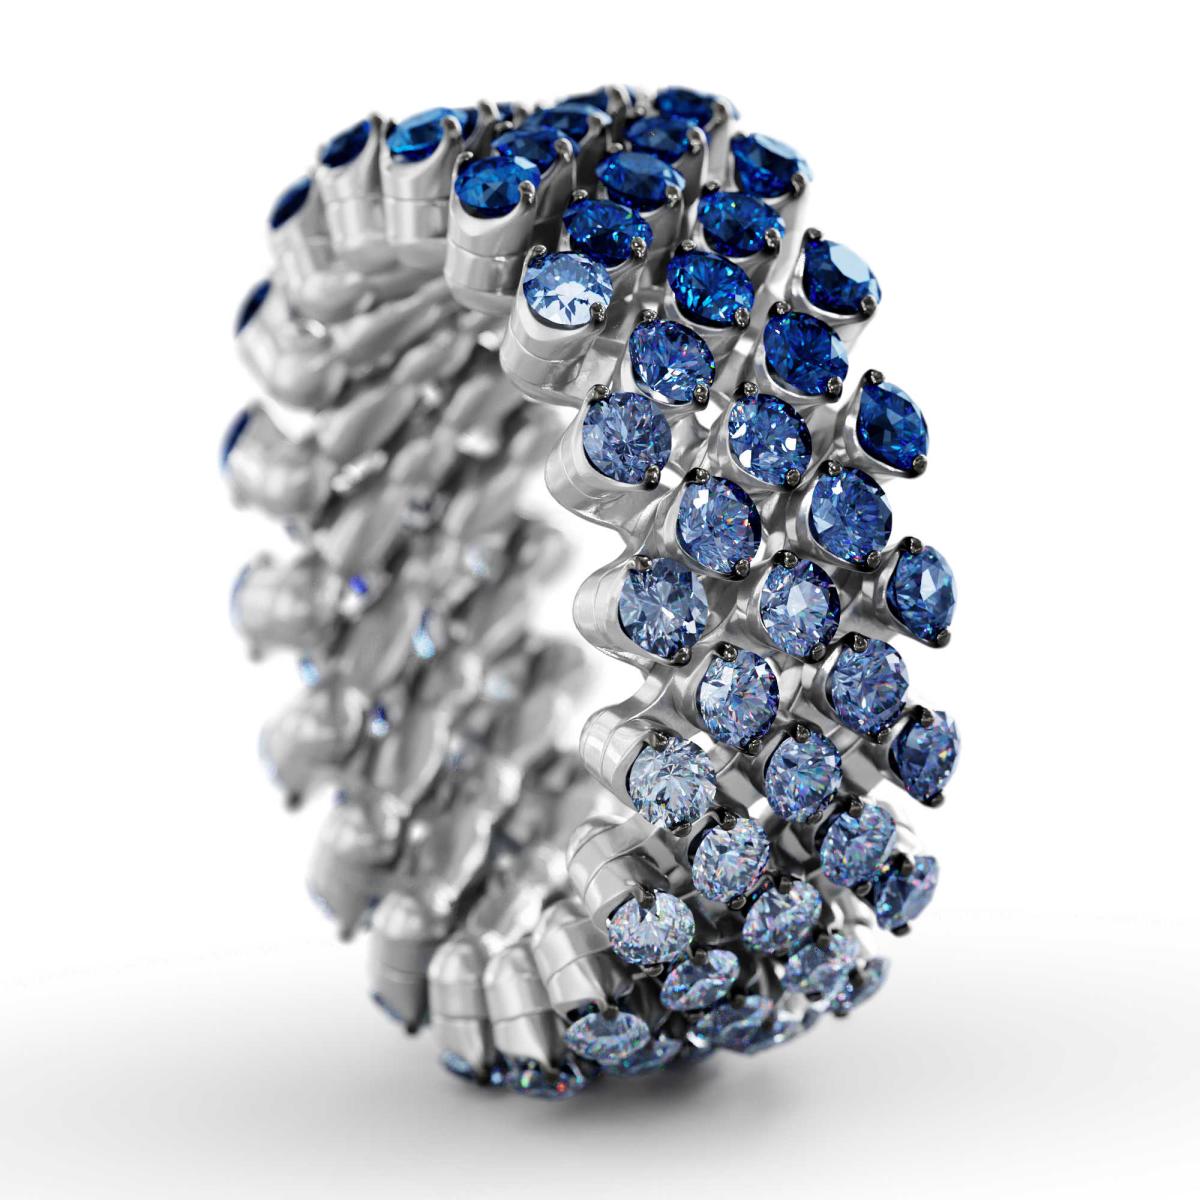 Brevetto Multi-Size Ring von Serafino Consoli (Ref. RMS 5F4 WBG BS SFT)